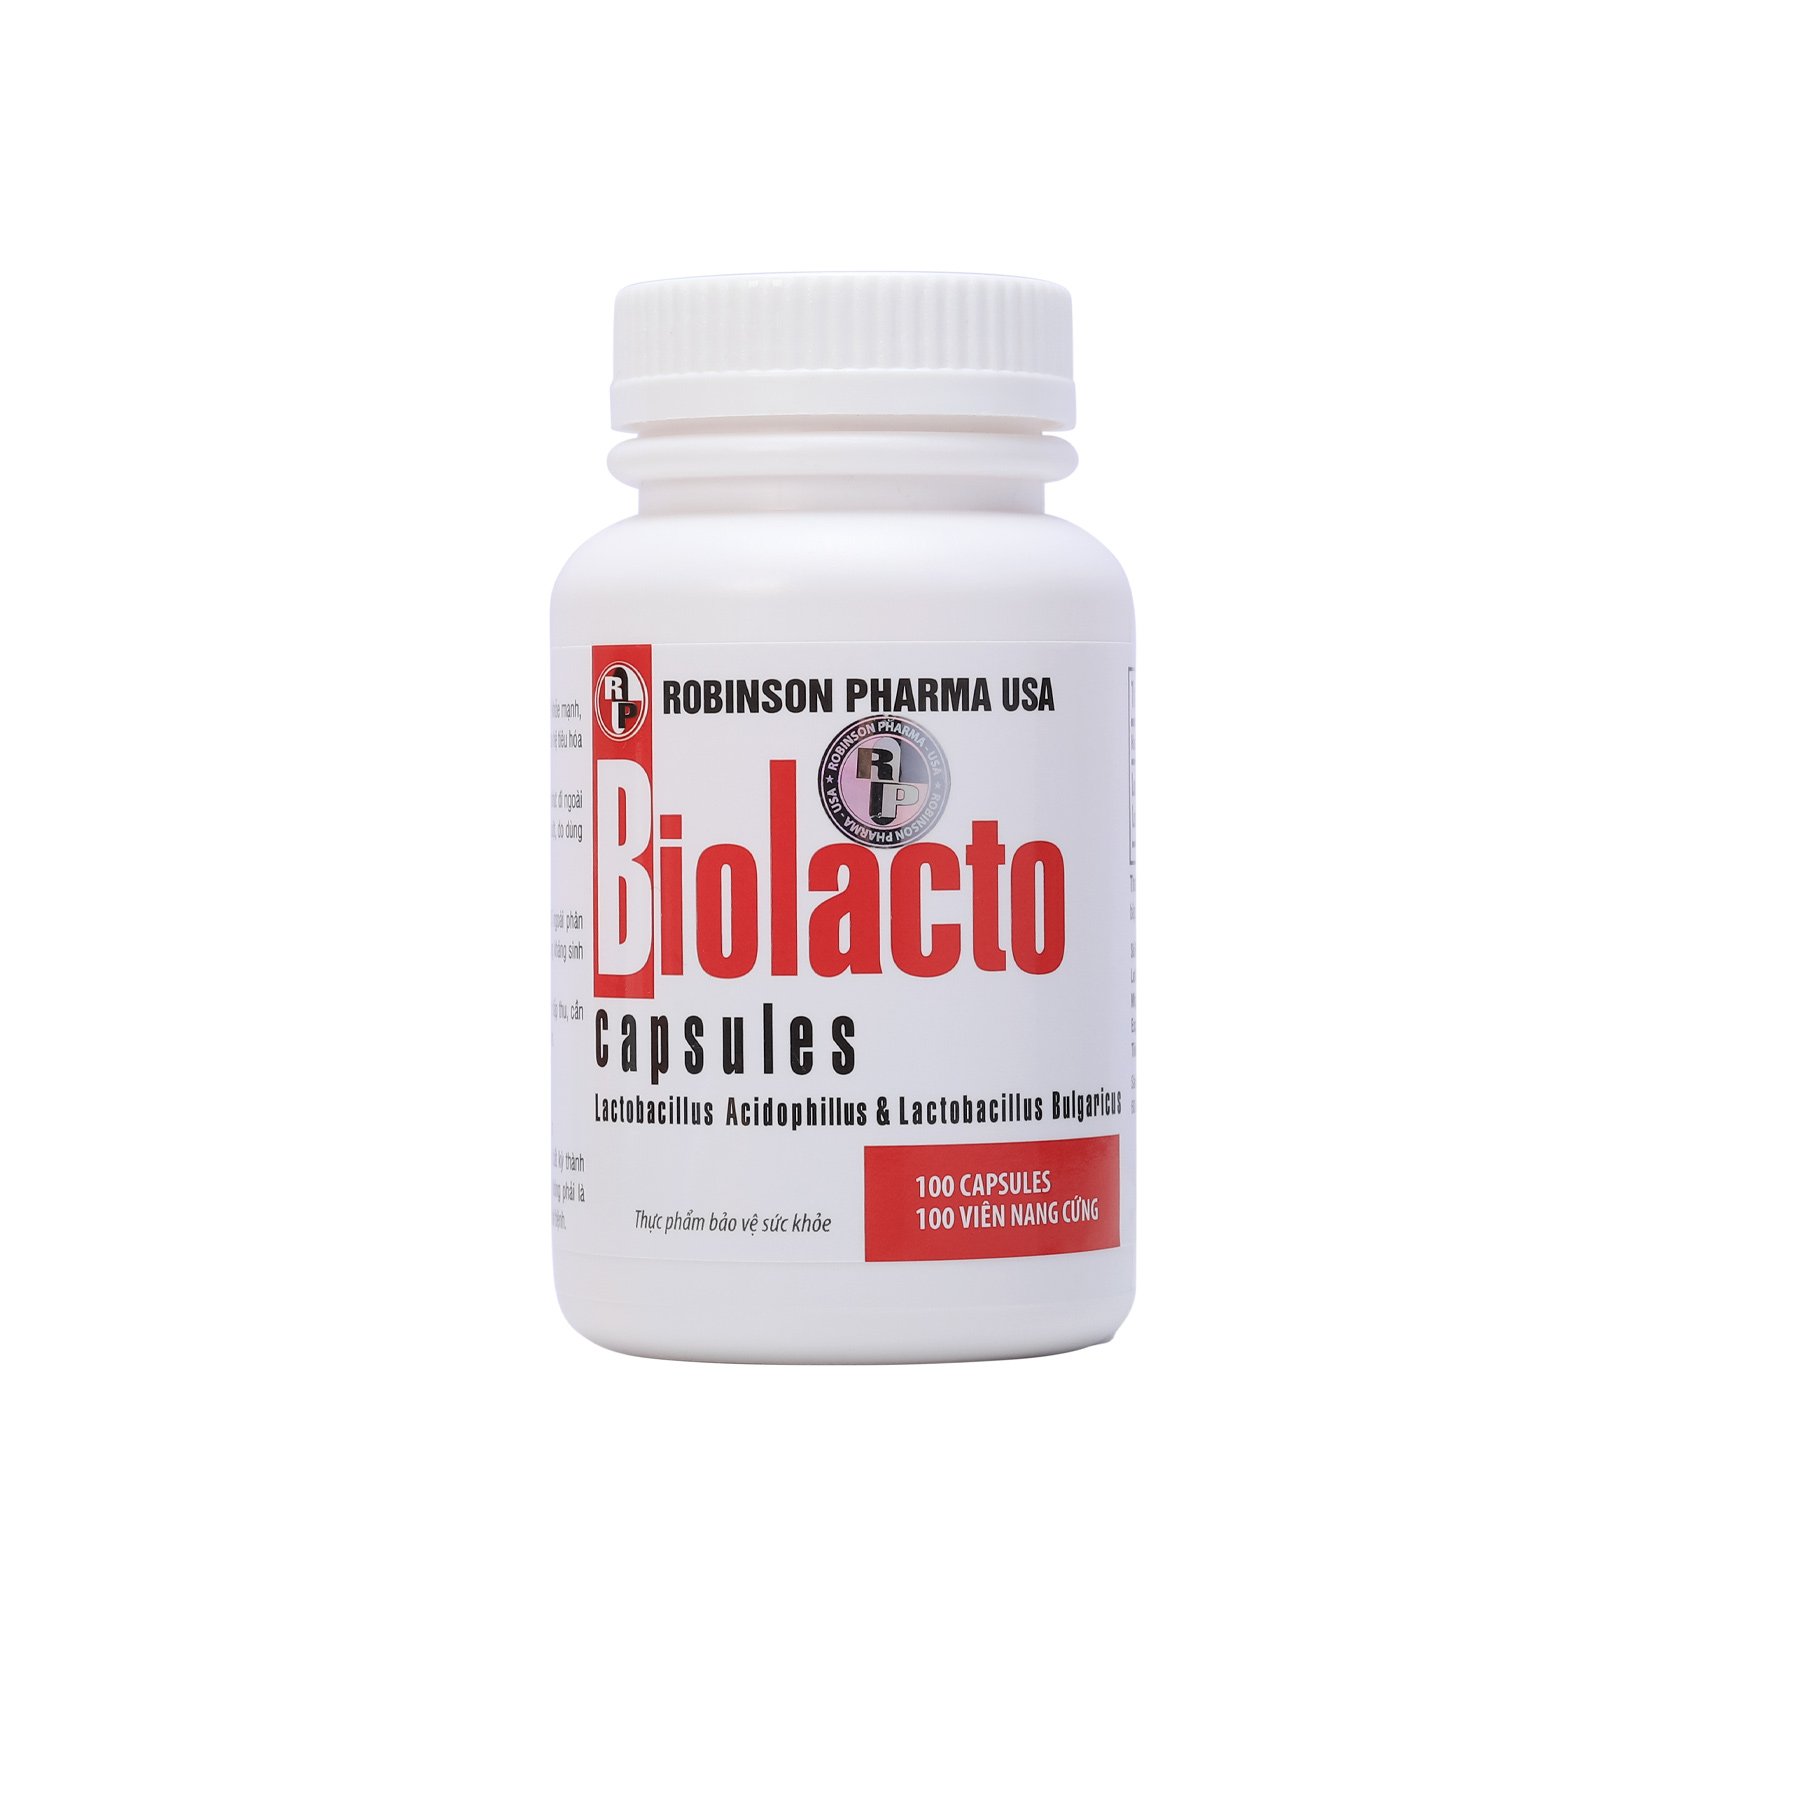 Viên uống TPCN BIOLACTO bổ sung vi khuẩn có lợi giúp cân bằng hệ vi sinh đường ruột,kích thích tăng cường tiêu hoá,hỗ trợ rối loạn tiêu hoá-chai 100 viên